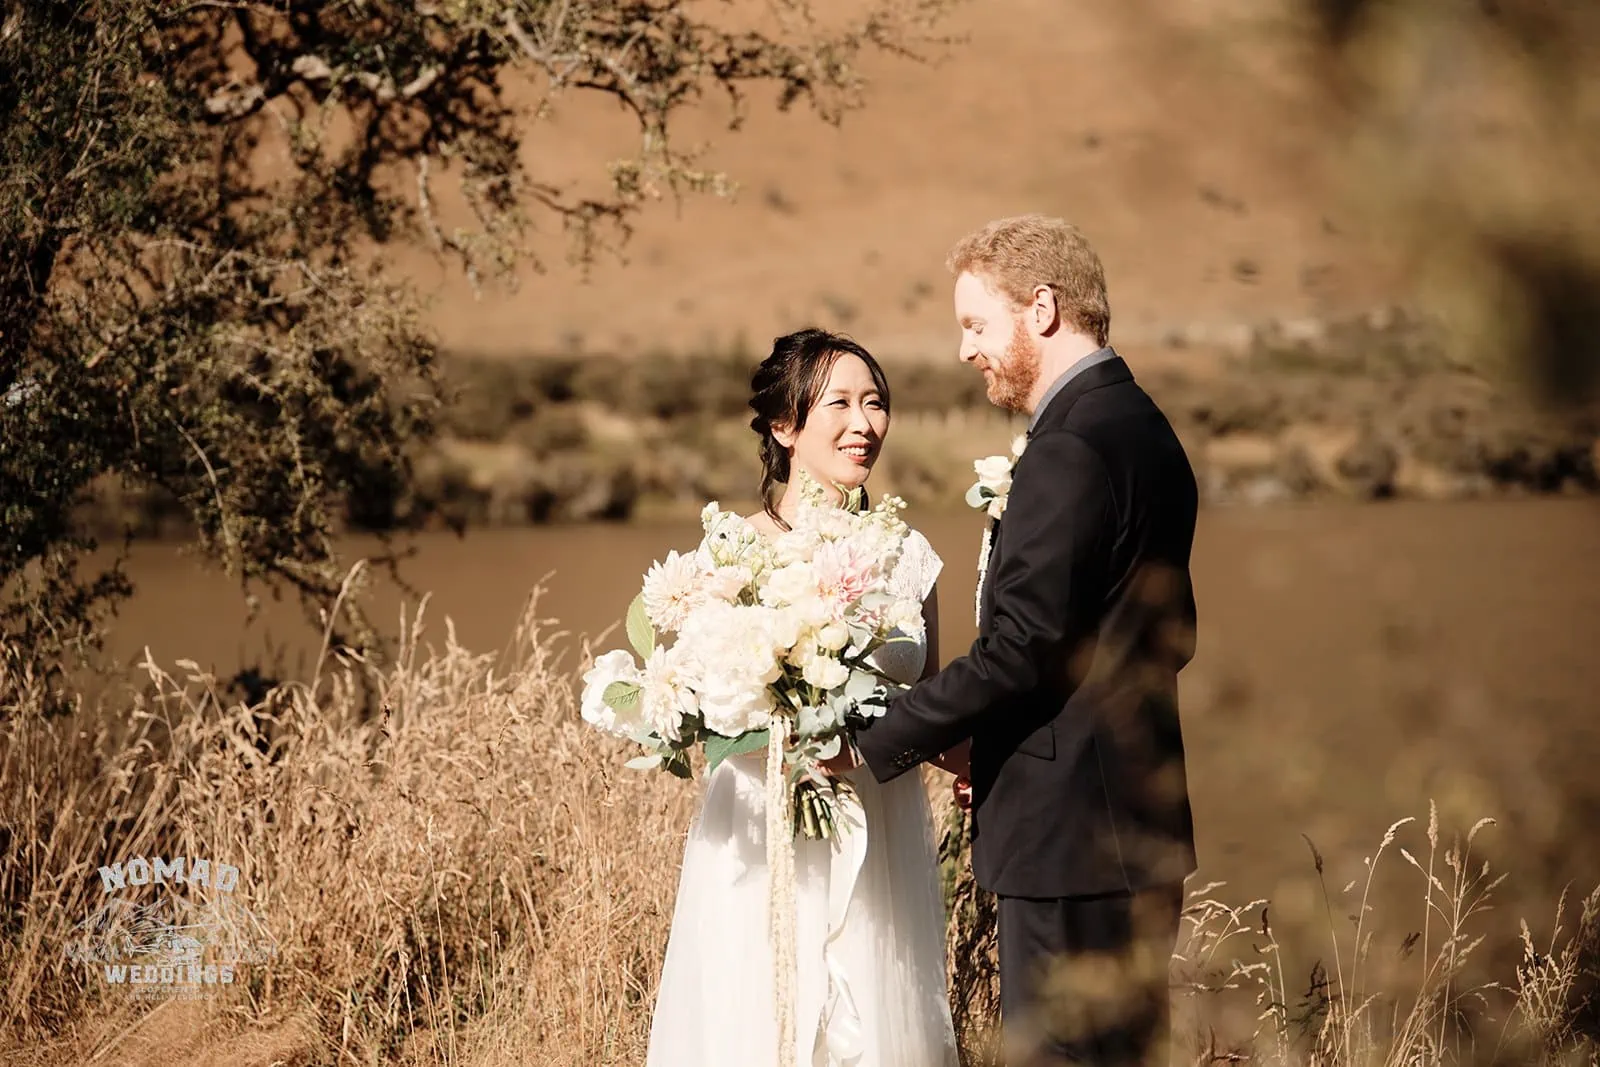 Queenstown New Zealand Elopement Wedding Photographer - Keywords: BRIDE, GROOM, LAKE